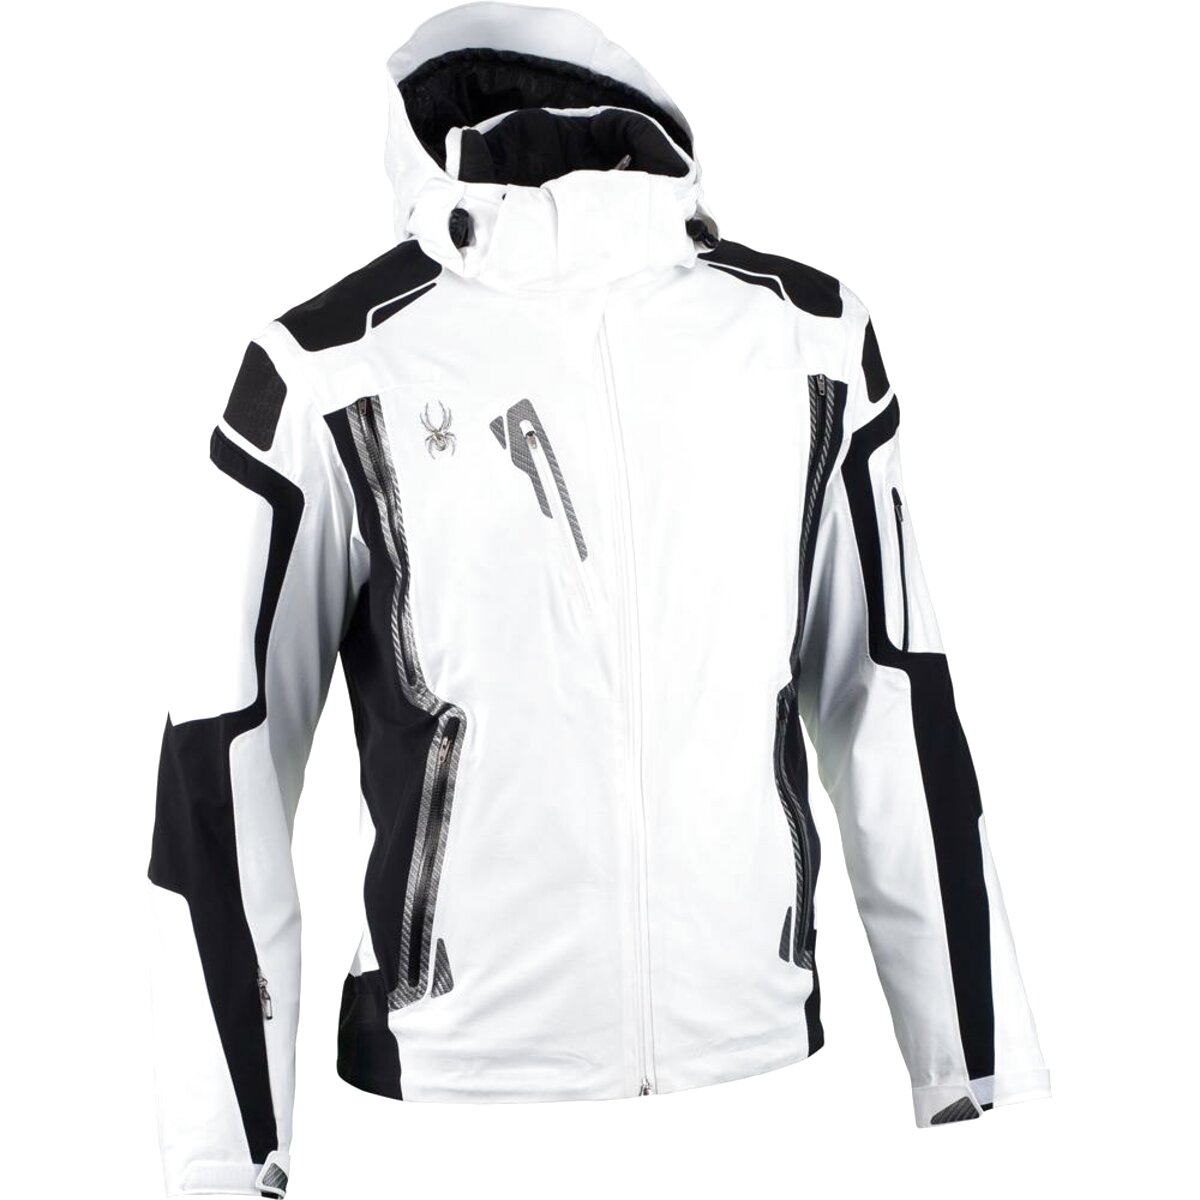 Mens Spyder Ski Jacket for sale in UK | 47 used Mens Spyder Ski Jackets